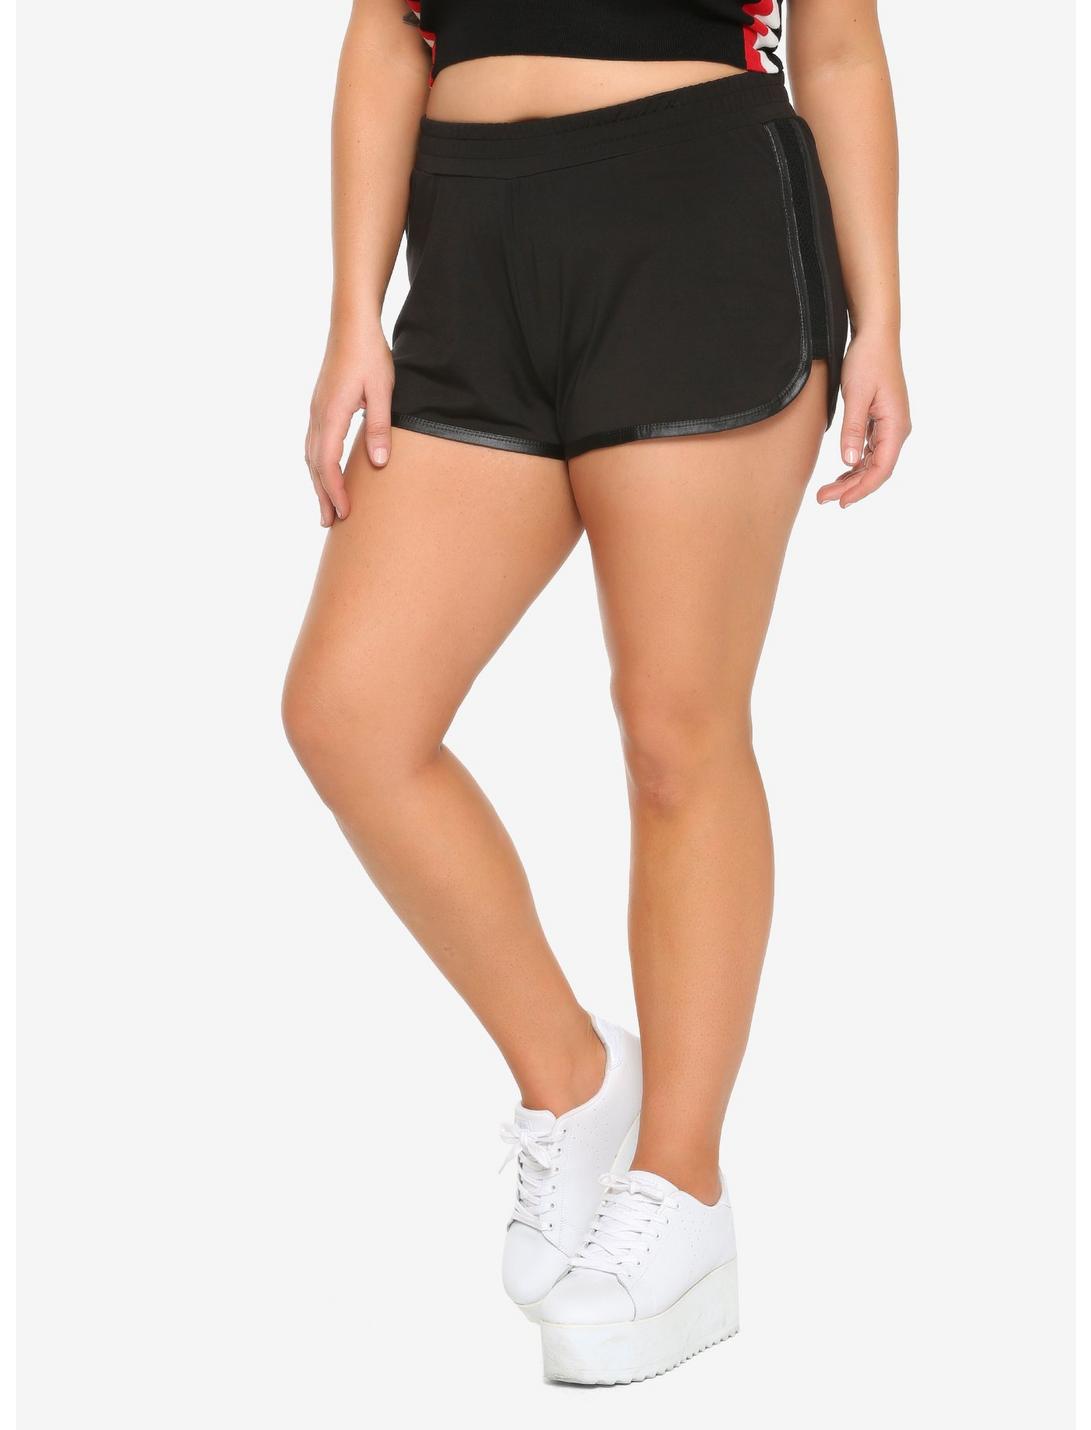 Black Mesh Tape Girls Soft Shorts Plus Size, BLACK, hi-res